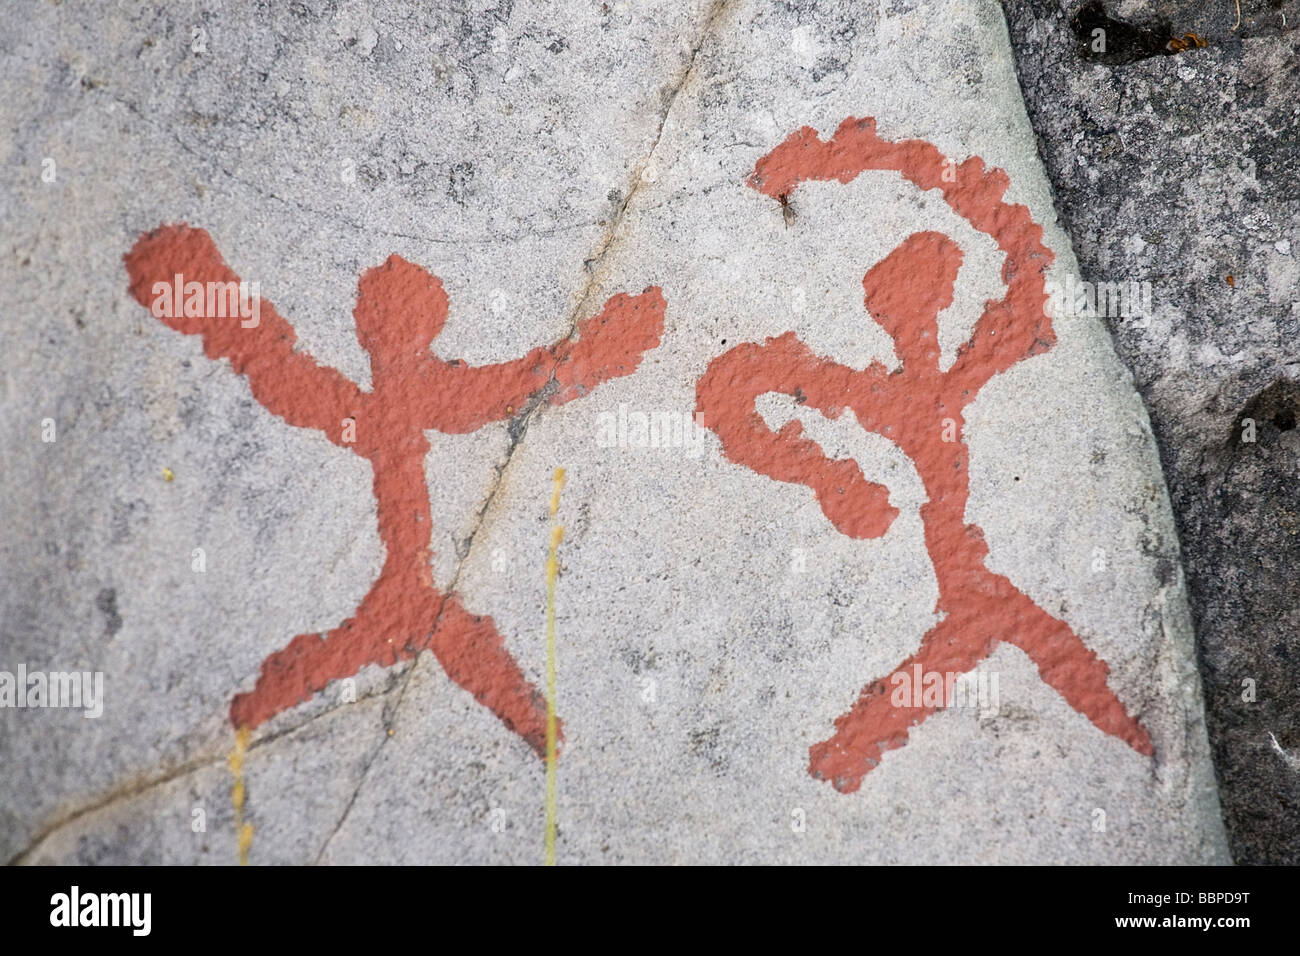 Sculptures rupestres (pétroglyphes) dans la région de Alta, Norvège Banque D'Images